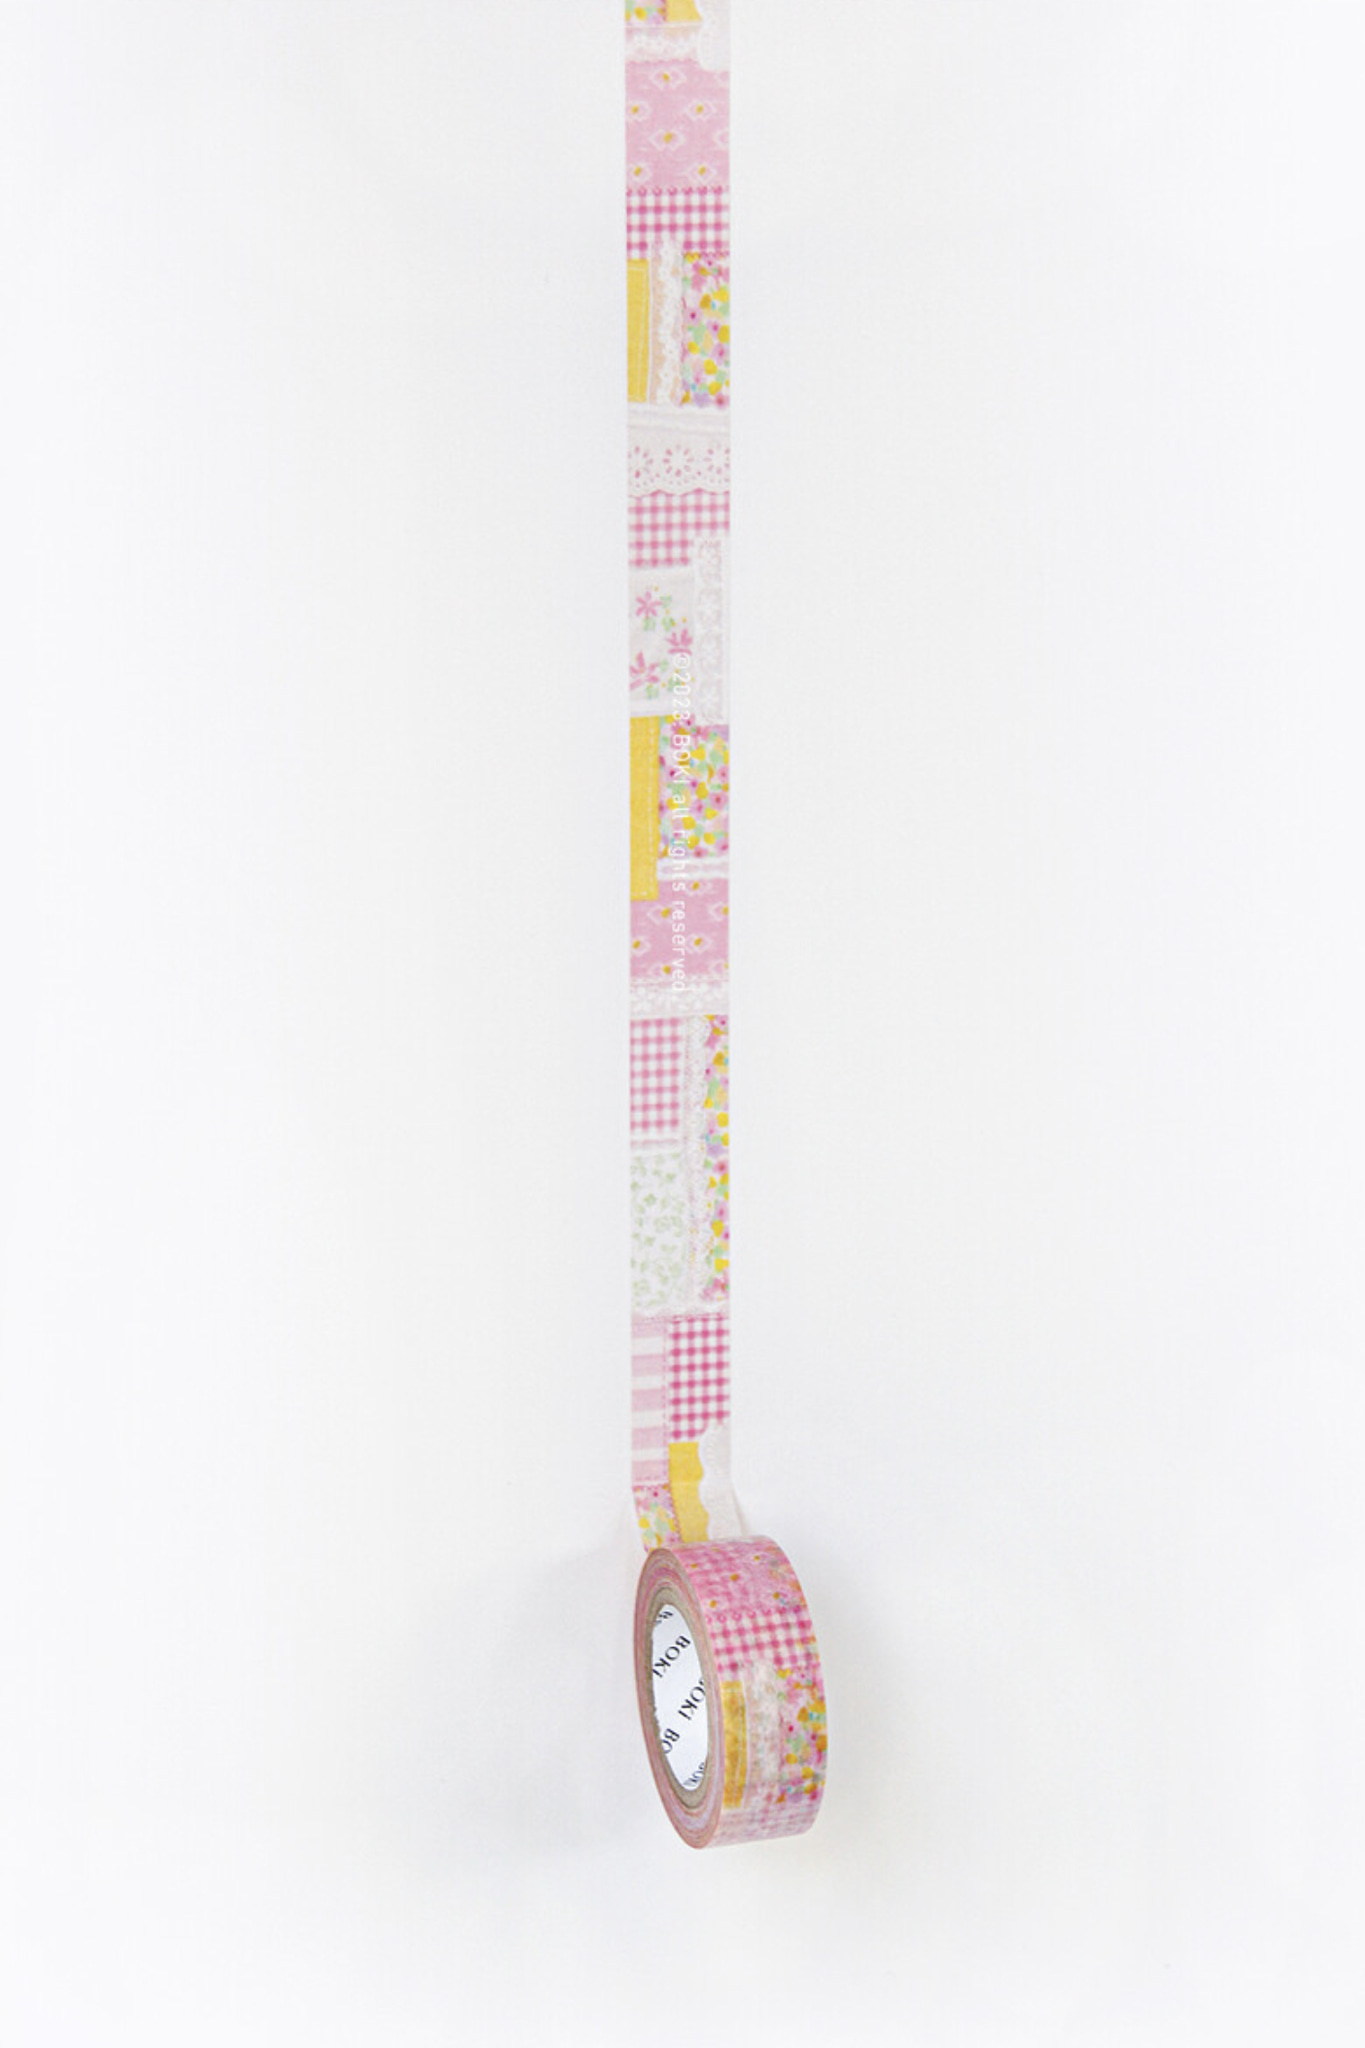 [boki] Masking tape, pink patchwork